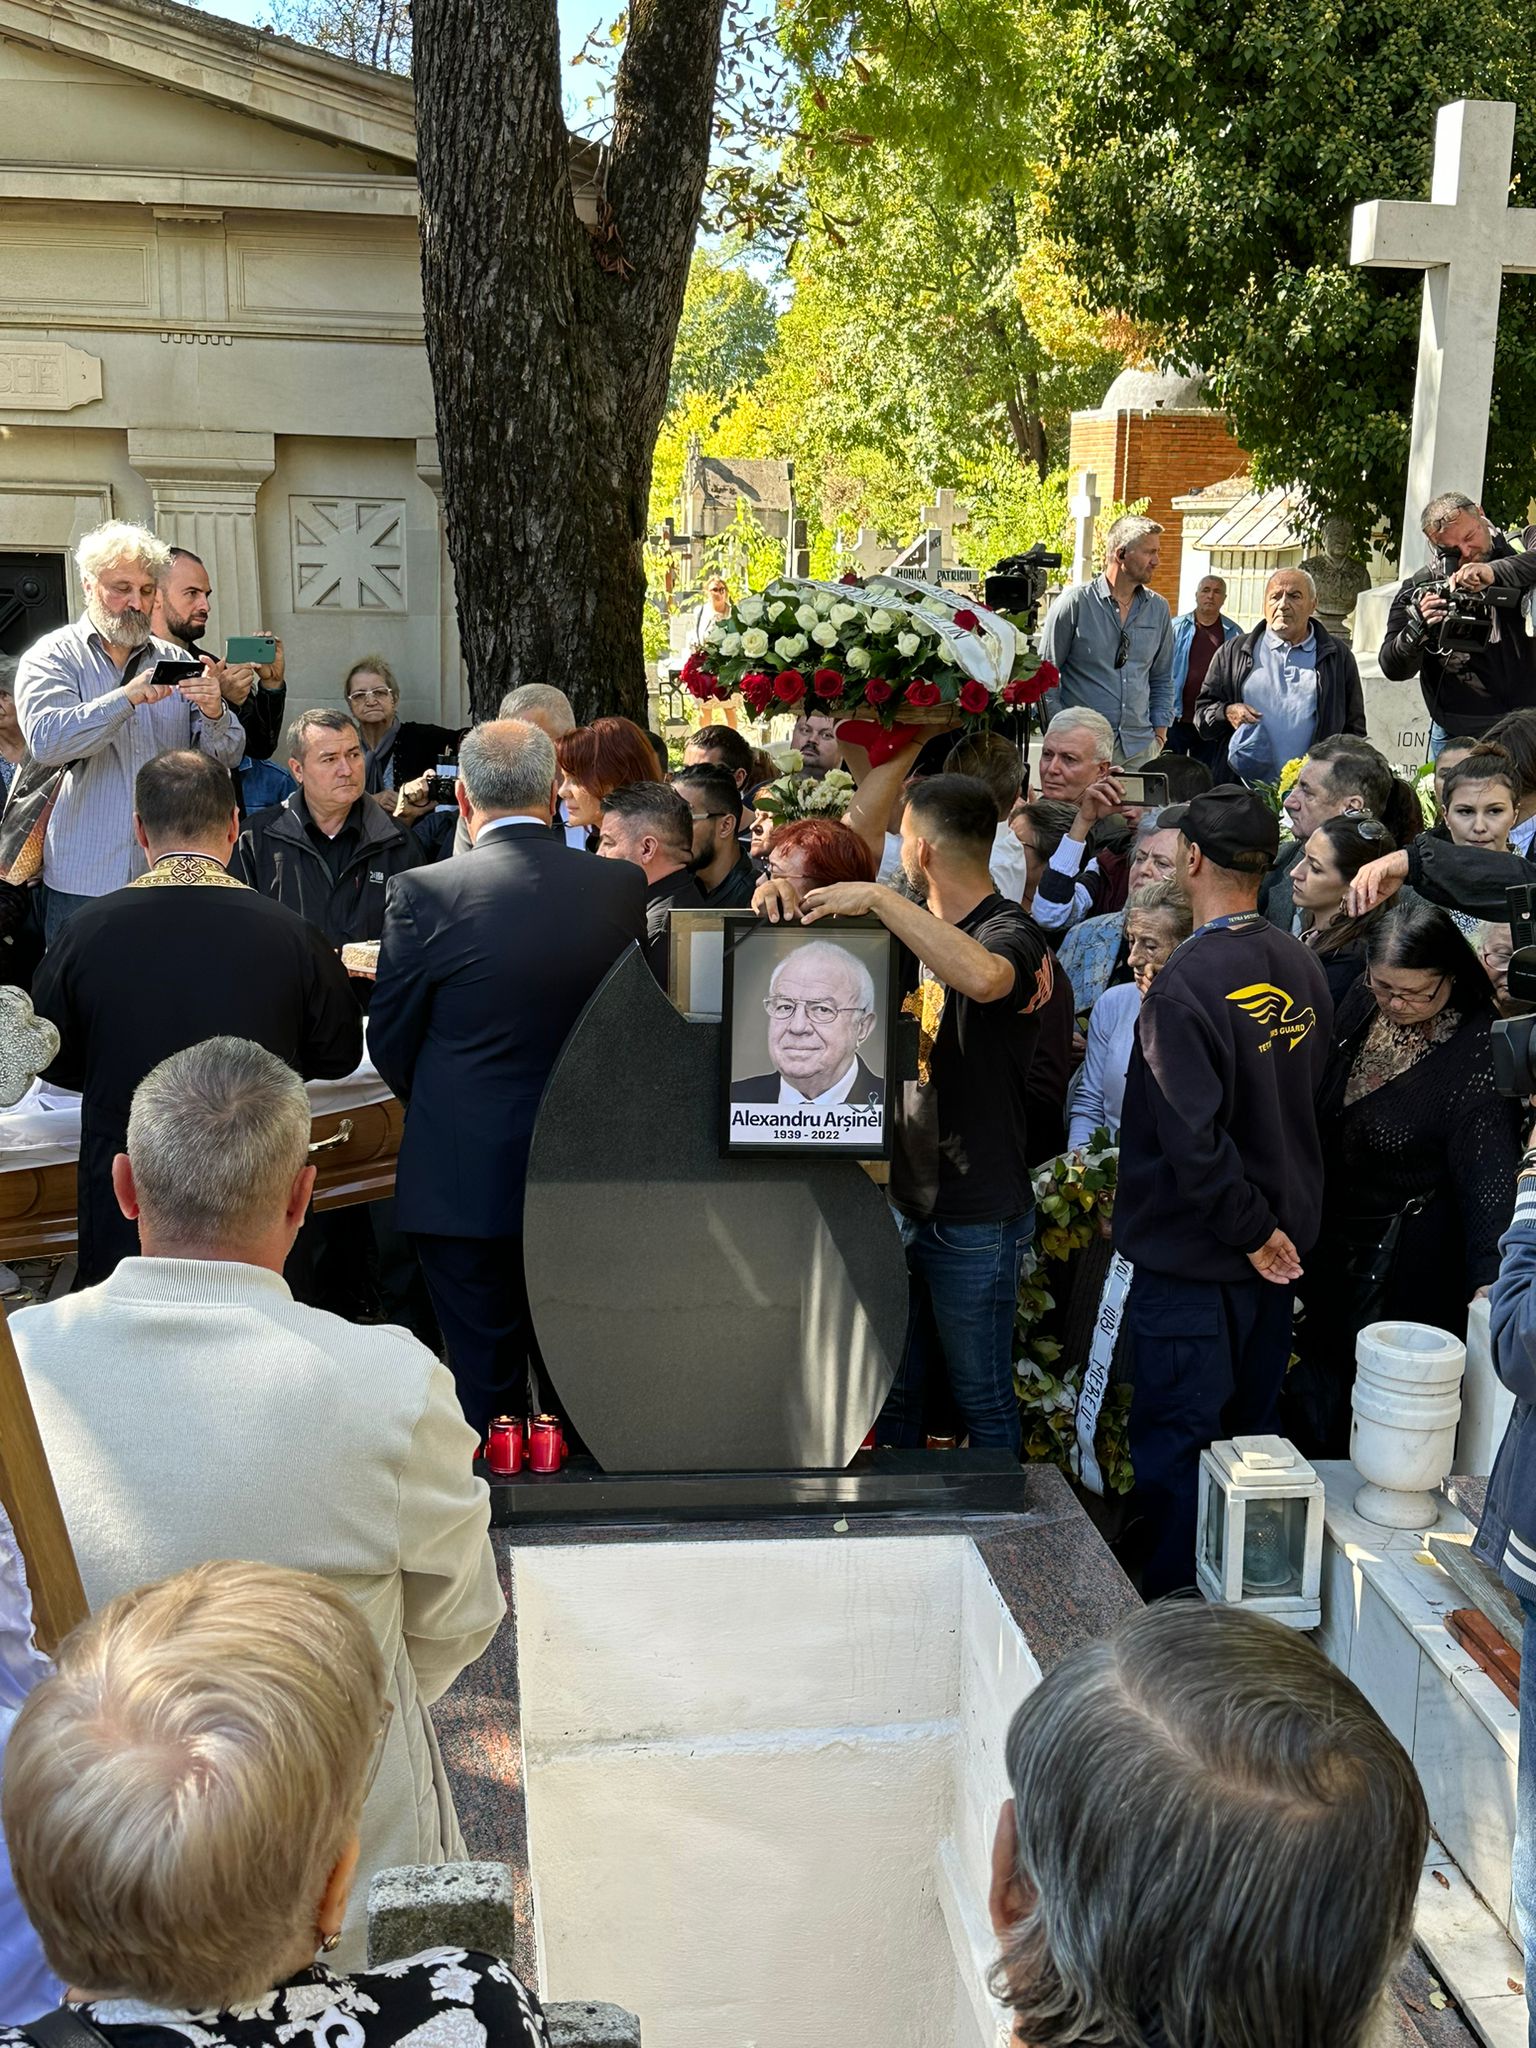 Alexandru Arșinel a fost înmormântat în cimitirul Bellu, duminică, în jurul prânzului (Foto: CANCAN.RO)